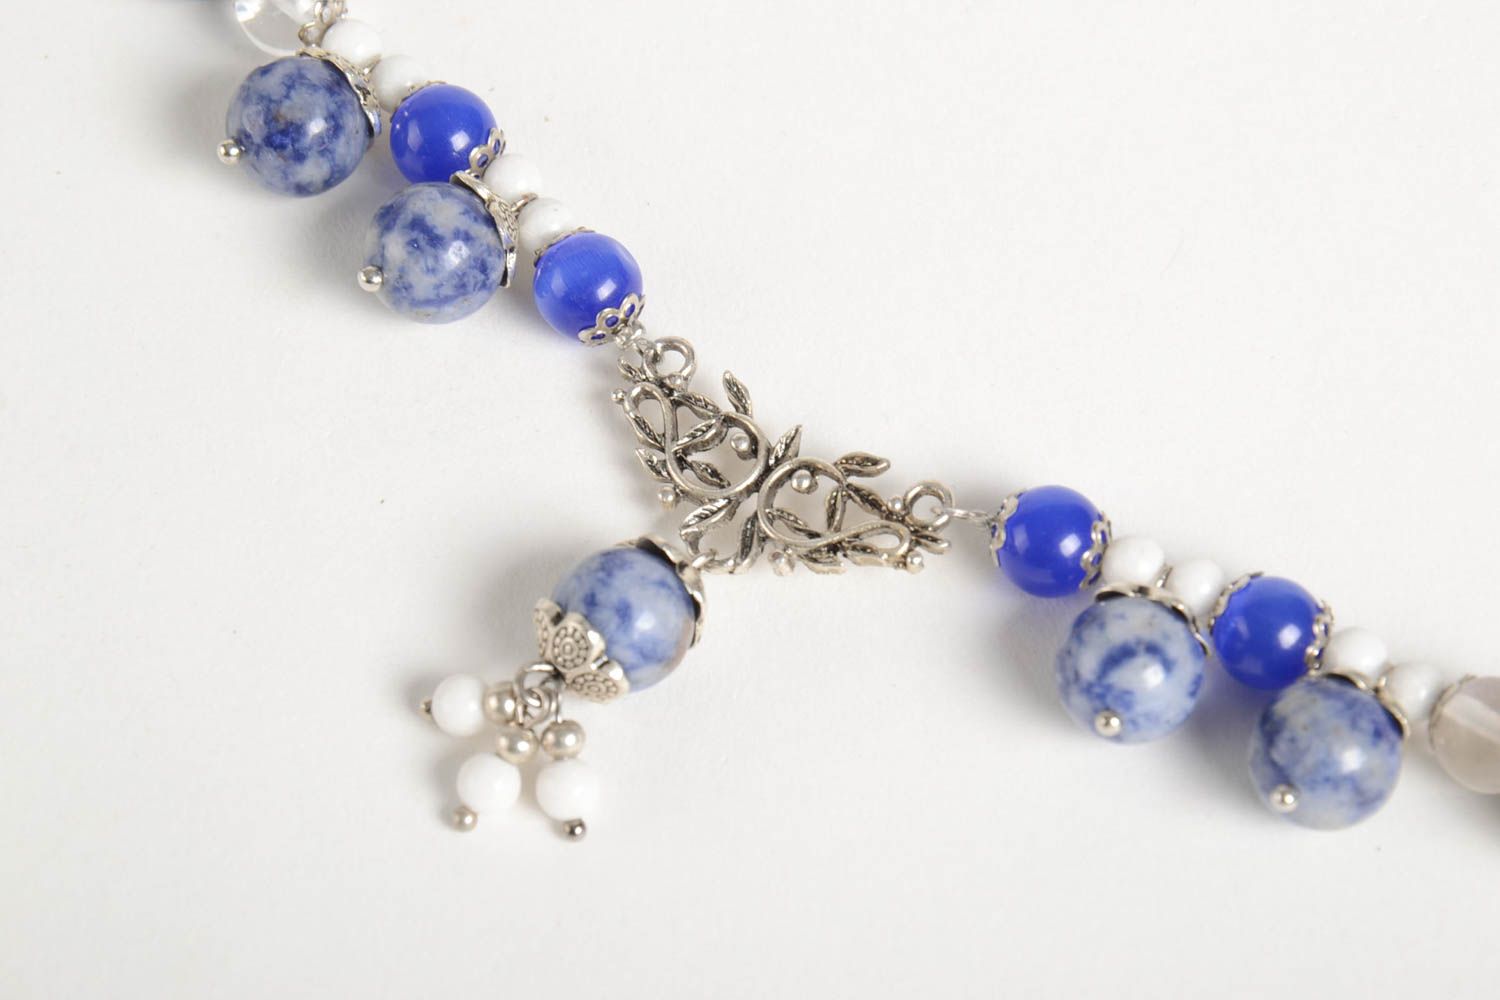 Handmade elegant blue necklace unusual stylish necklace designer jewelry photo 2